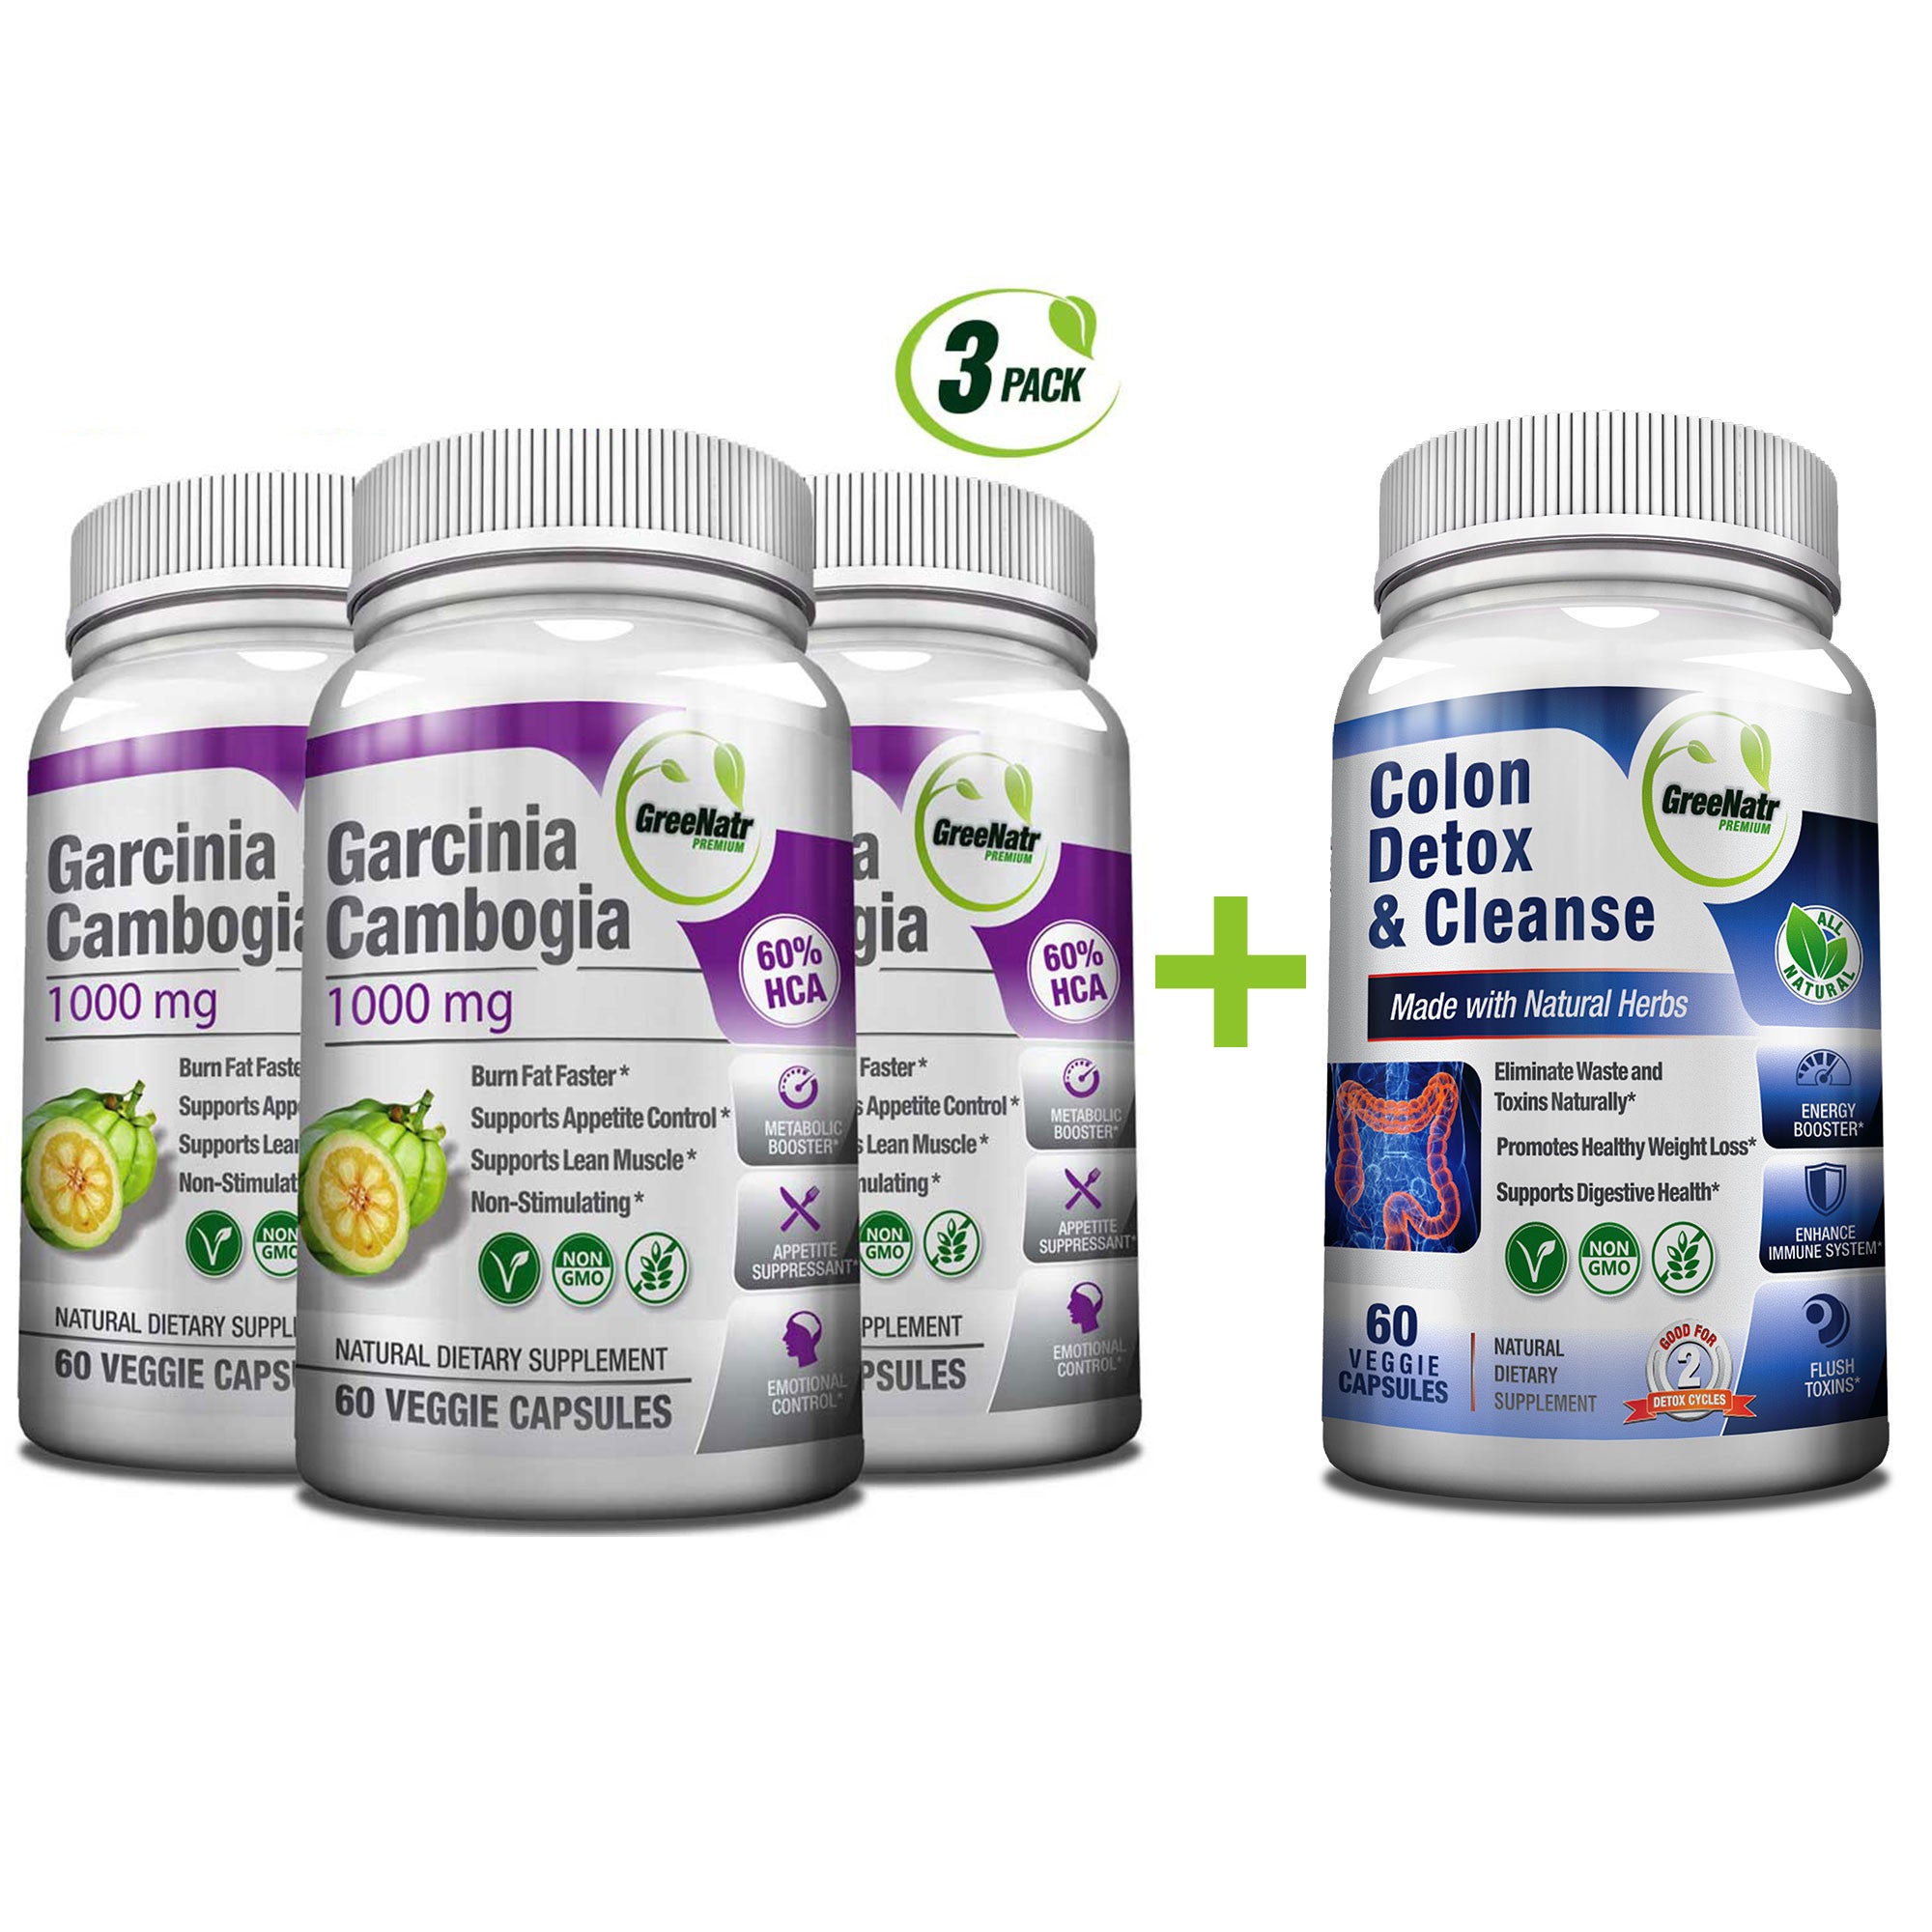 GreeNatr Garcinia Cambogia + Colon Detox Bundle